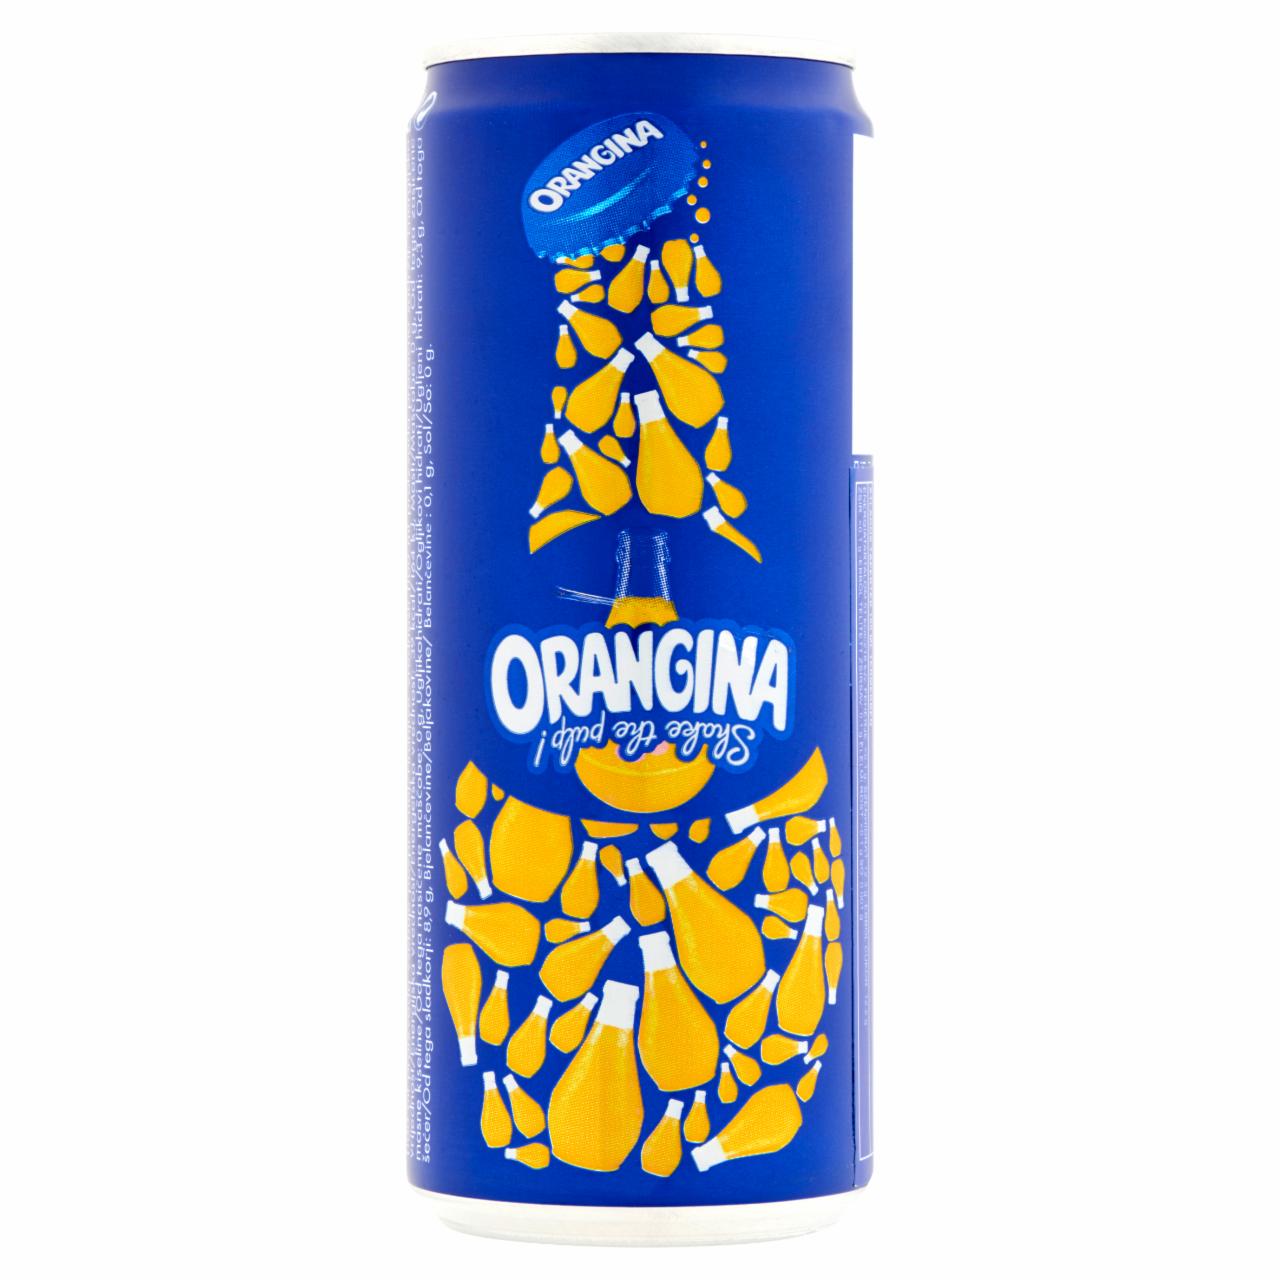 Képek - Orangina szénsavas narancs üdítőital, narancsrosttal 0,33 l